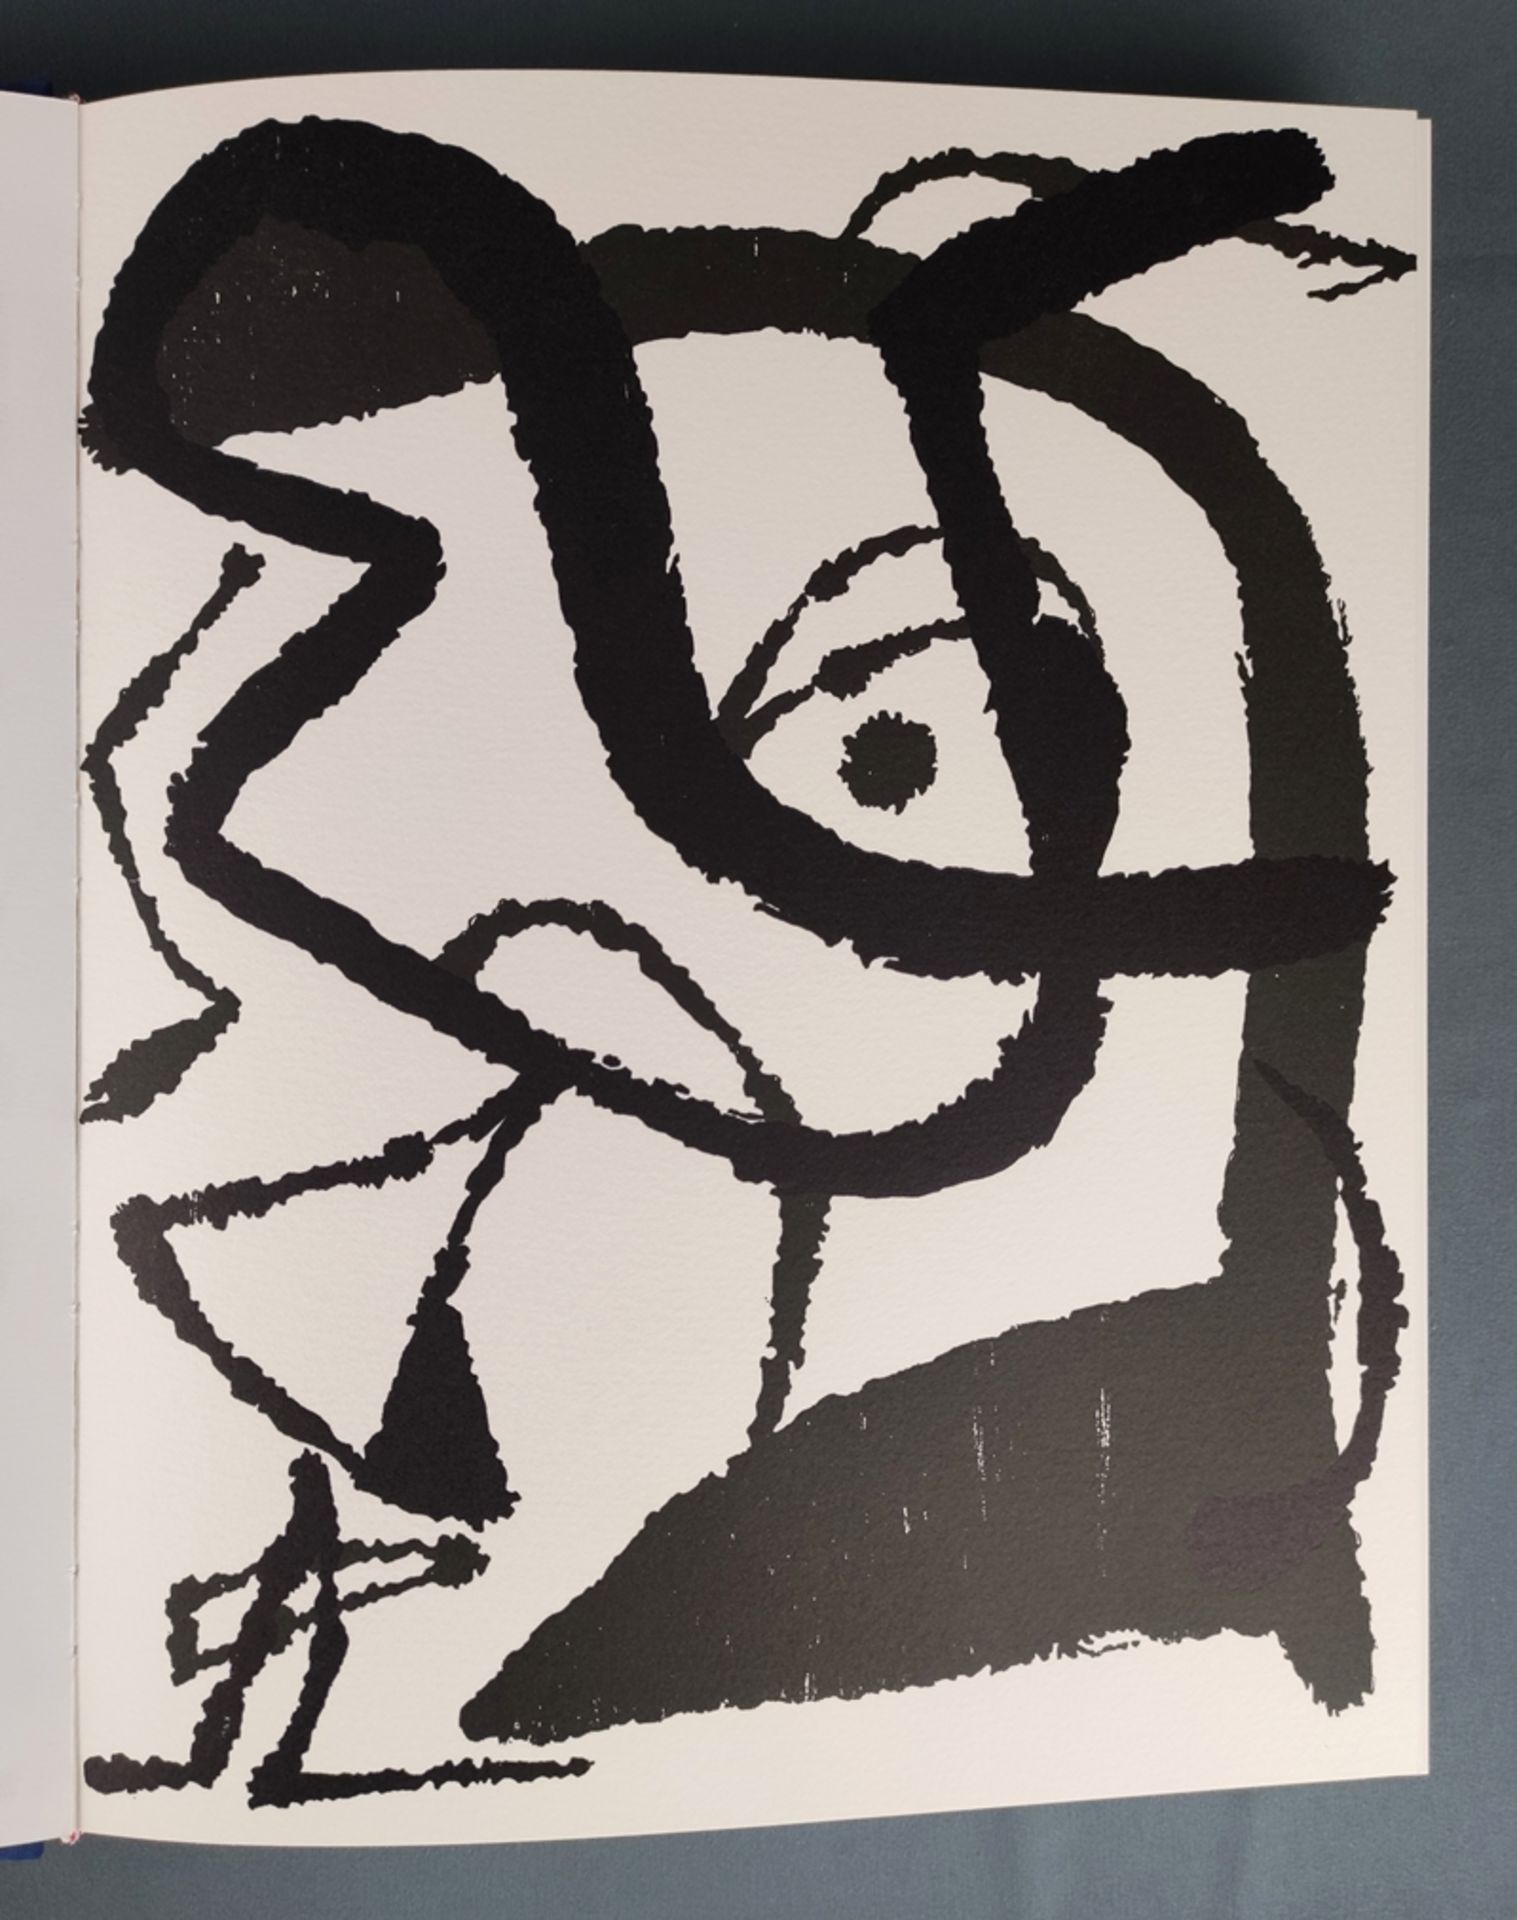 Kunstband Miró, 3 Bände Radierungen, "Joan Miró - Graveur" (Band I-III), Dupin, Jacques, Original-R - Bild 8 aus 11